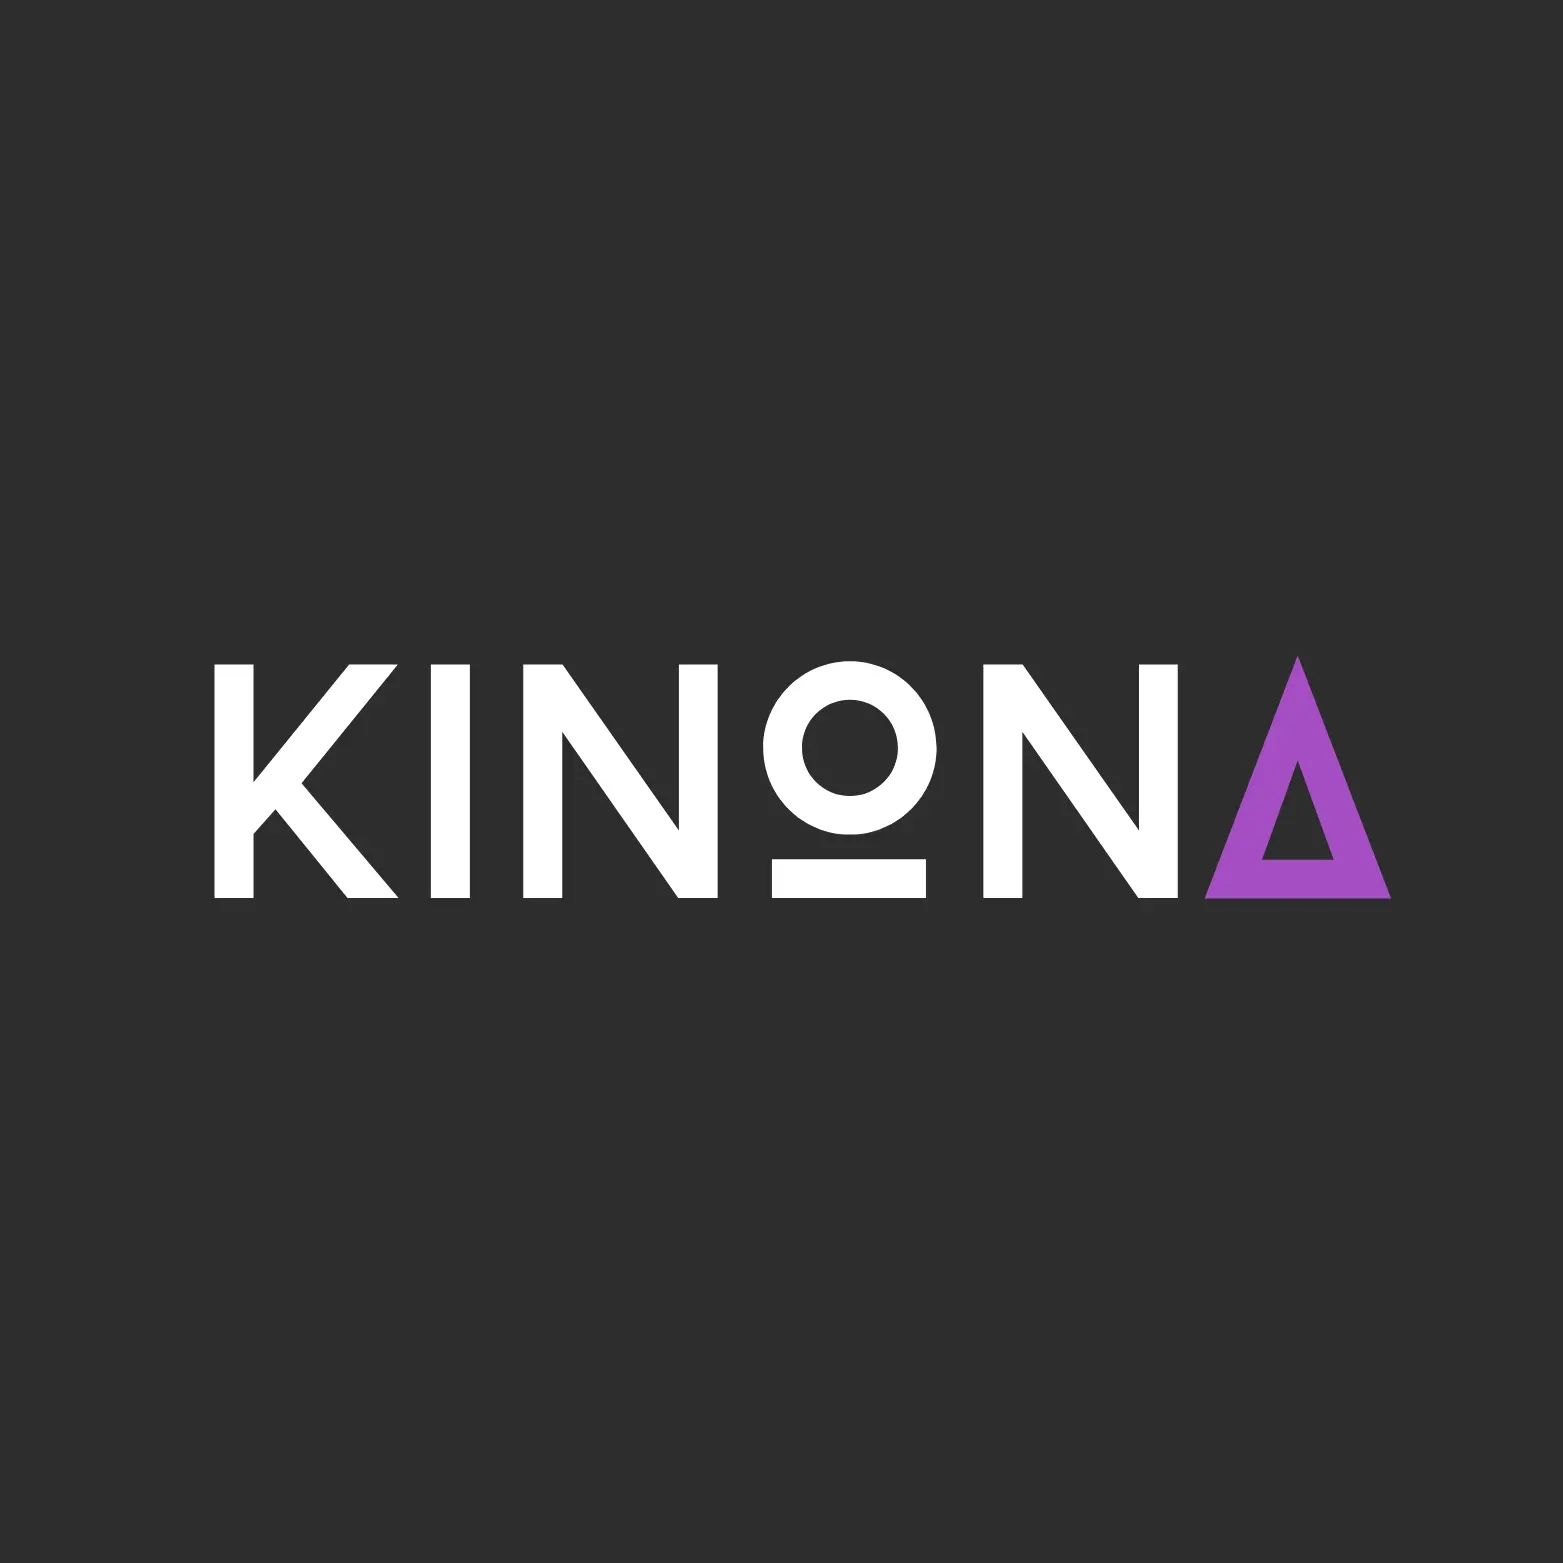 KiNoNa Marketing Agency - وكالة كينونة للتسويق